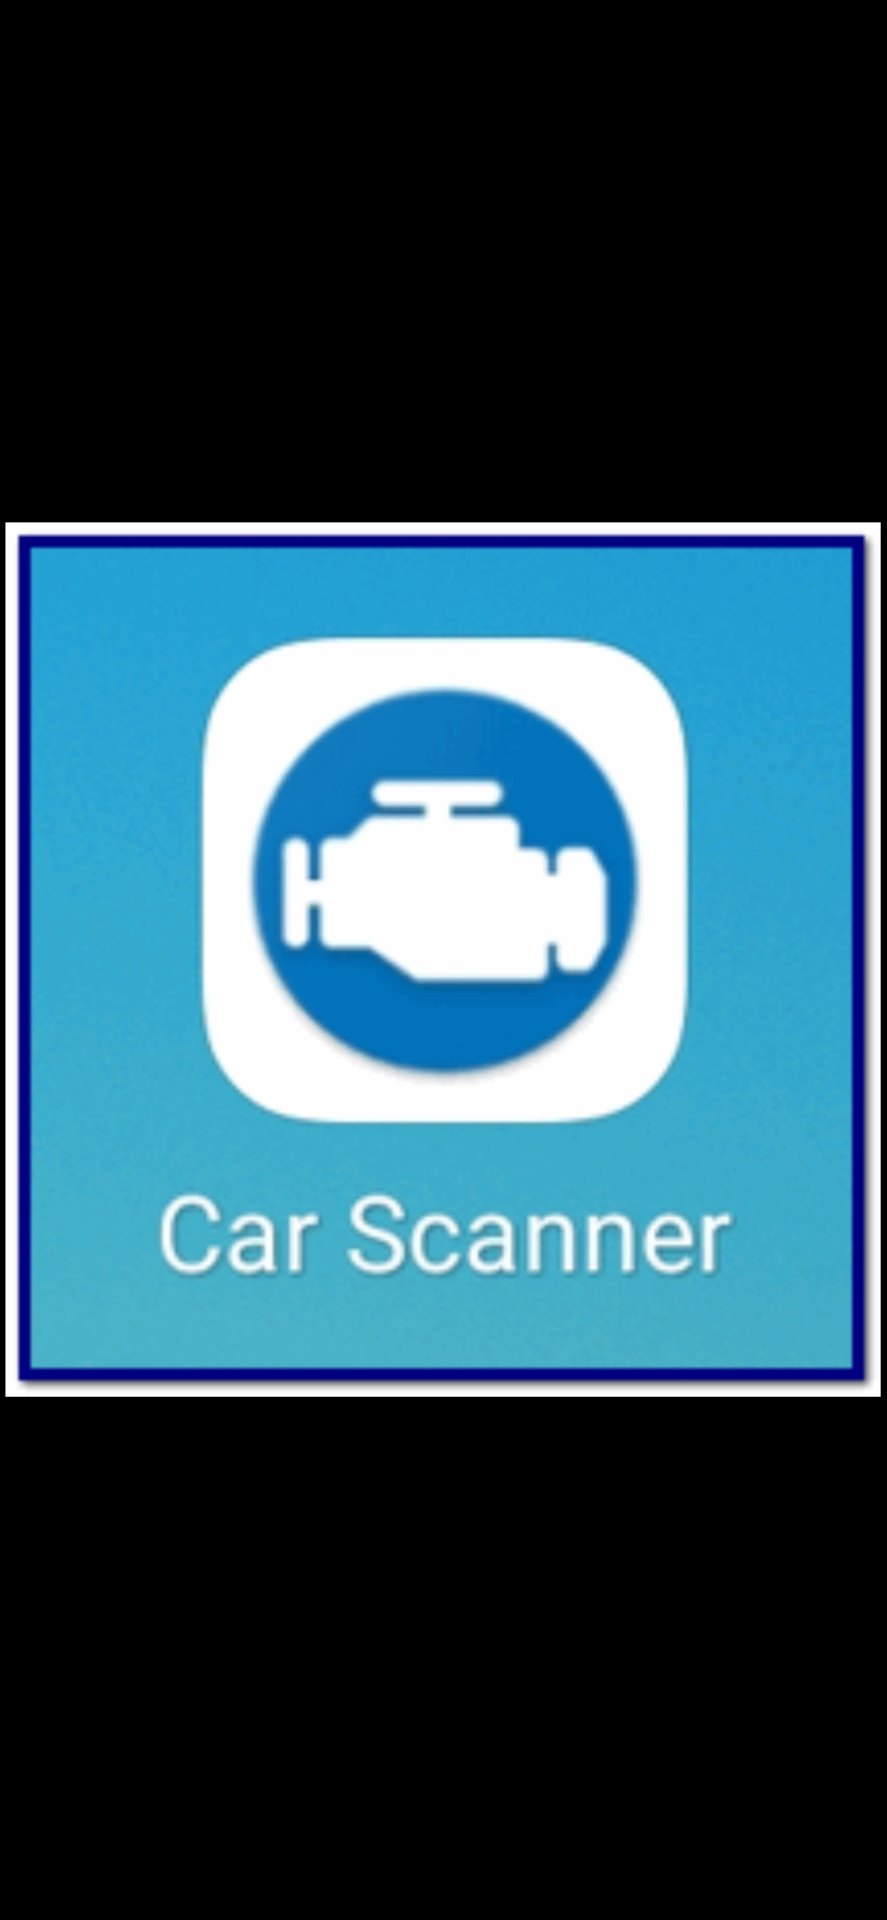 Car scanner адаптации. Сброс адаптации car Scanner. Сброс адаптации АКПП через car Scanner. Сброс адаптаций car сканнег. Car Scanner информация о коробке.